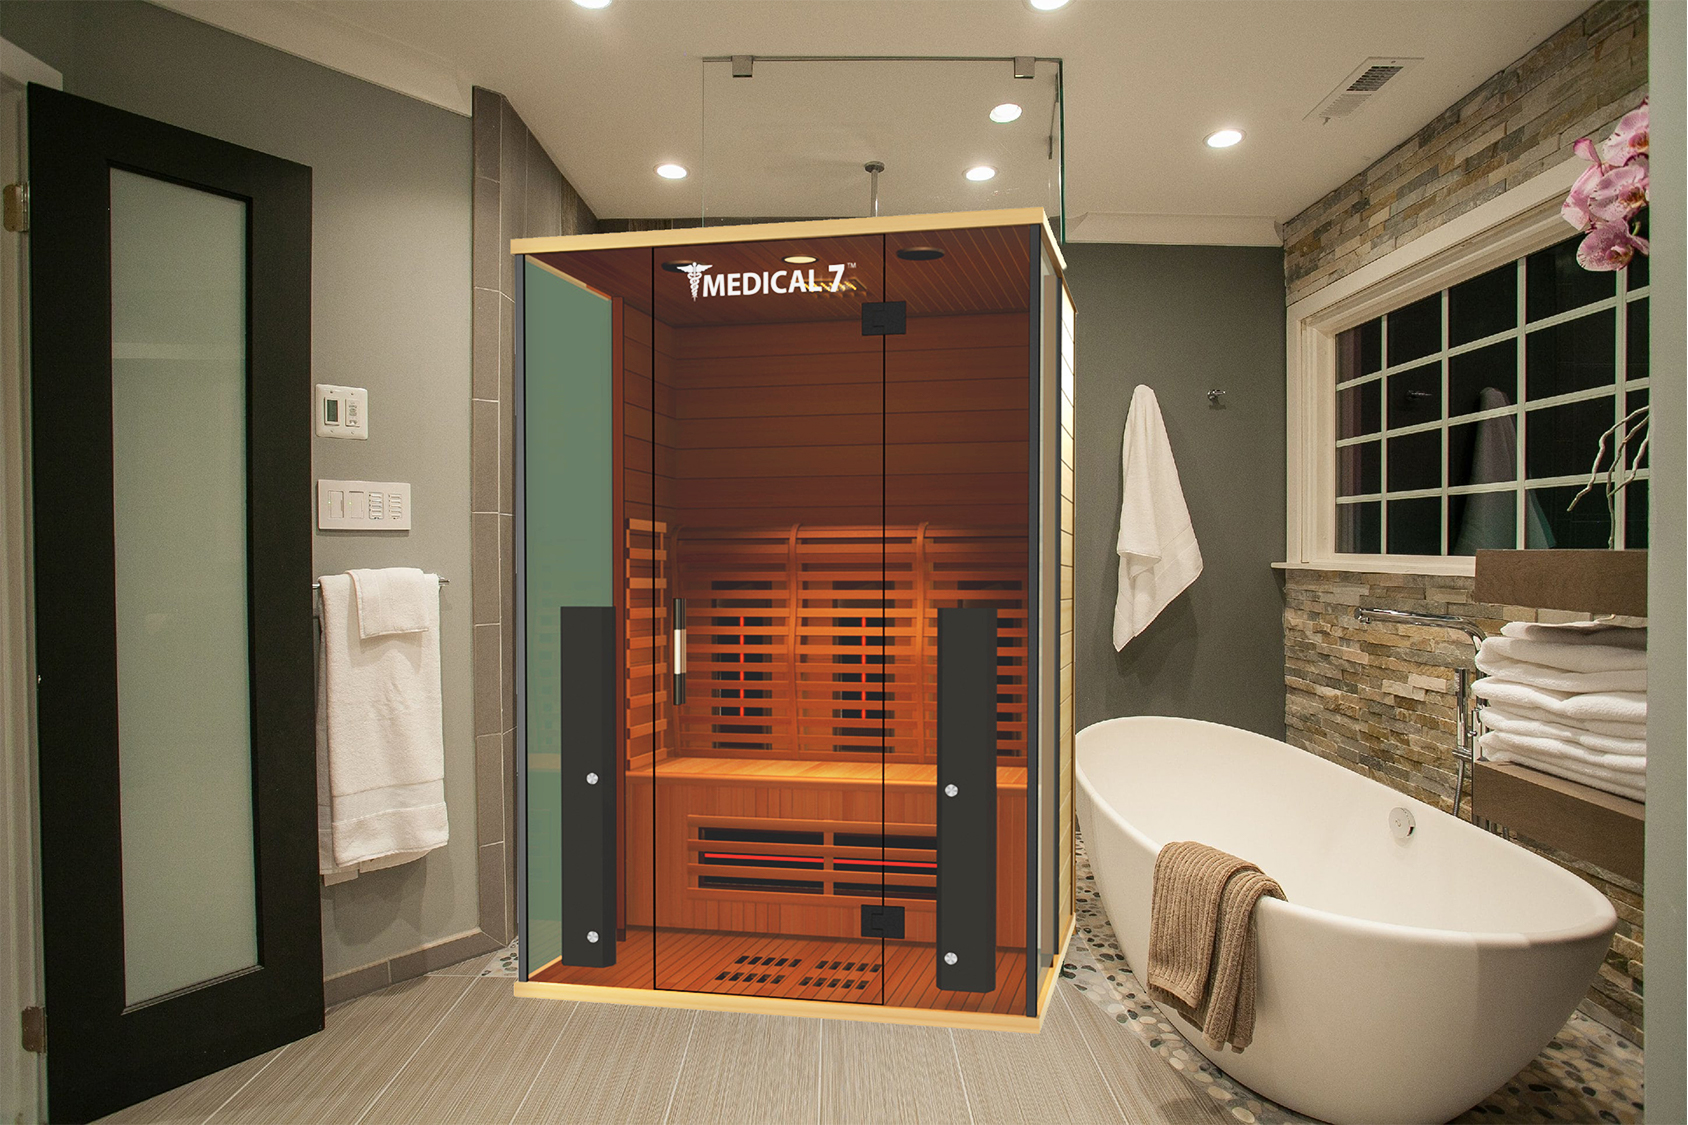 Medical 7™ in a Luxury Bathroom Showcase*